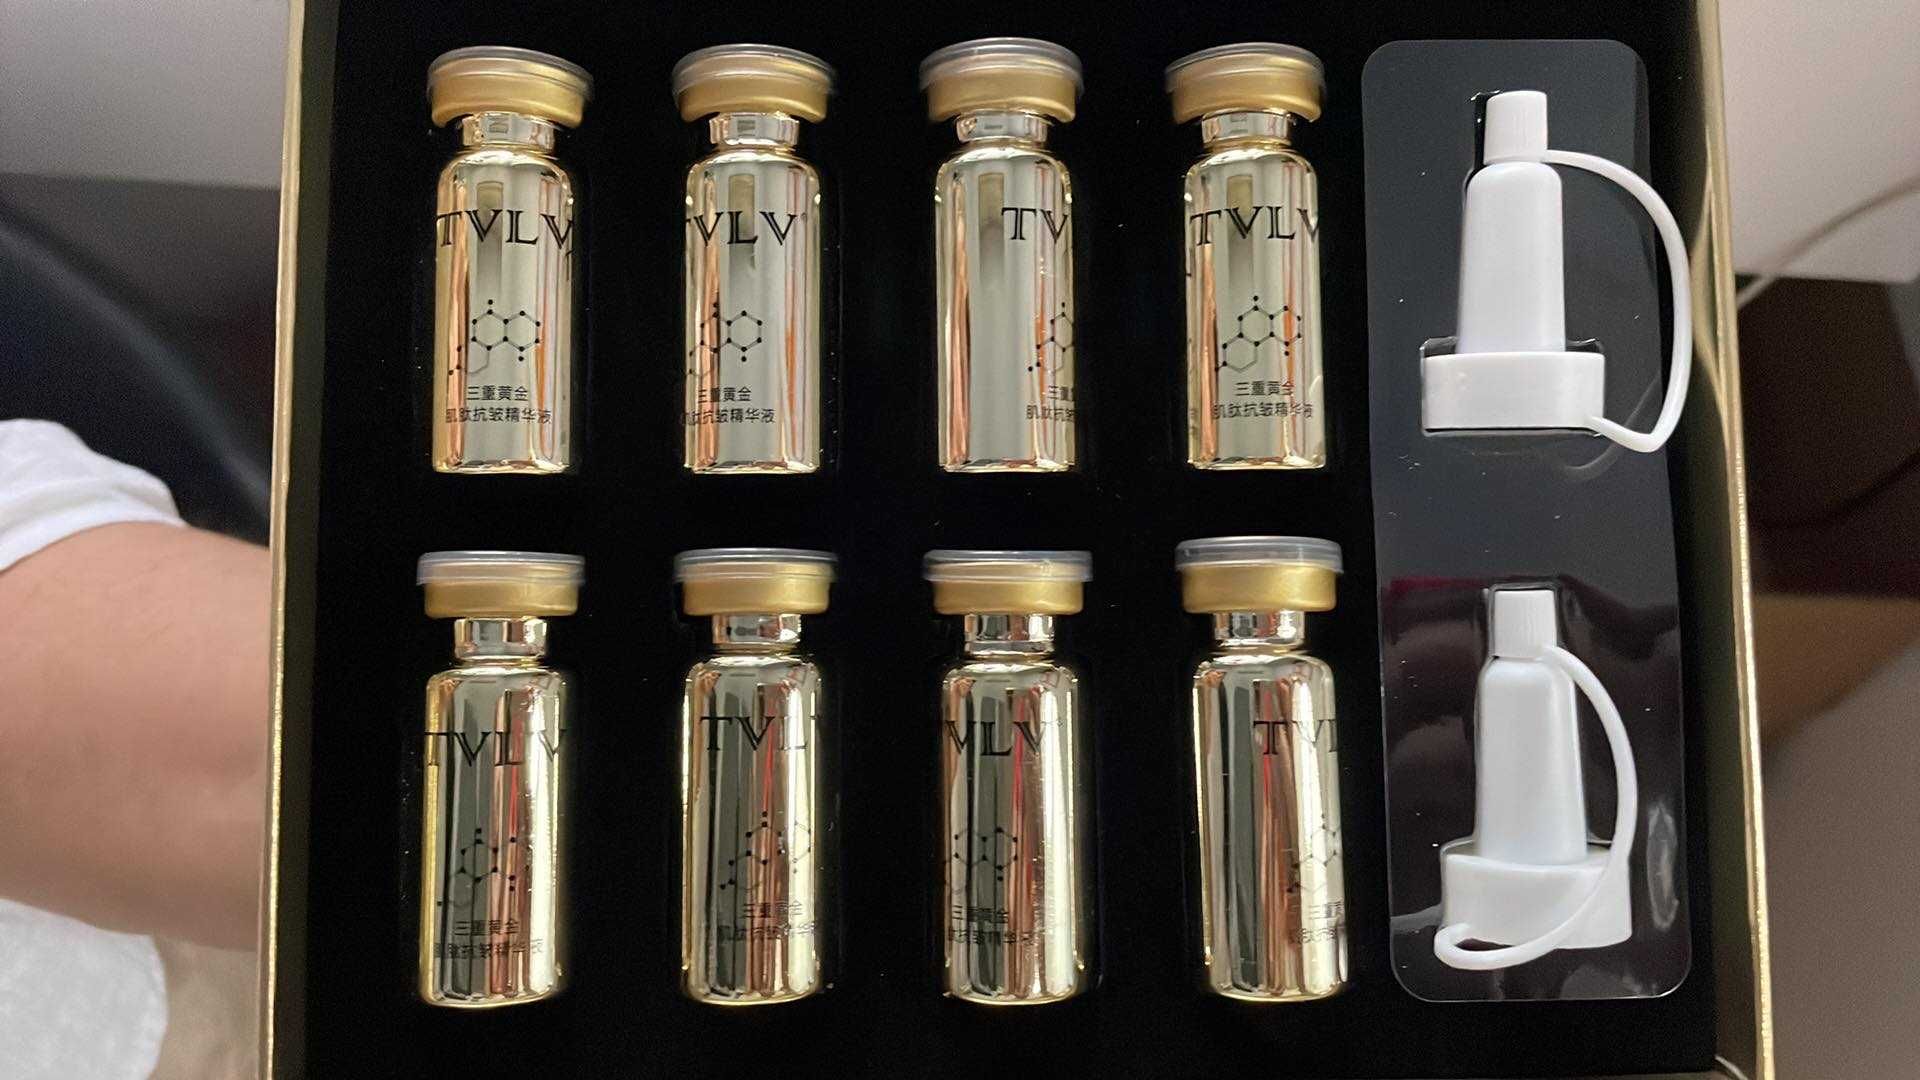 Potrójne złote serum do twarzy TVLV Triple Gold Essence 8 x 10 ml NOWE